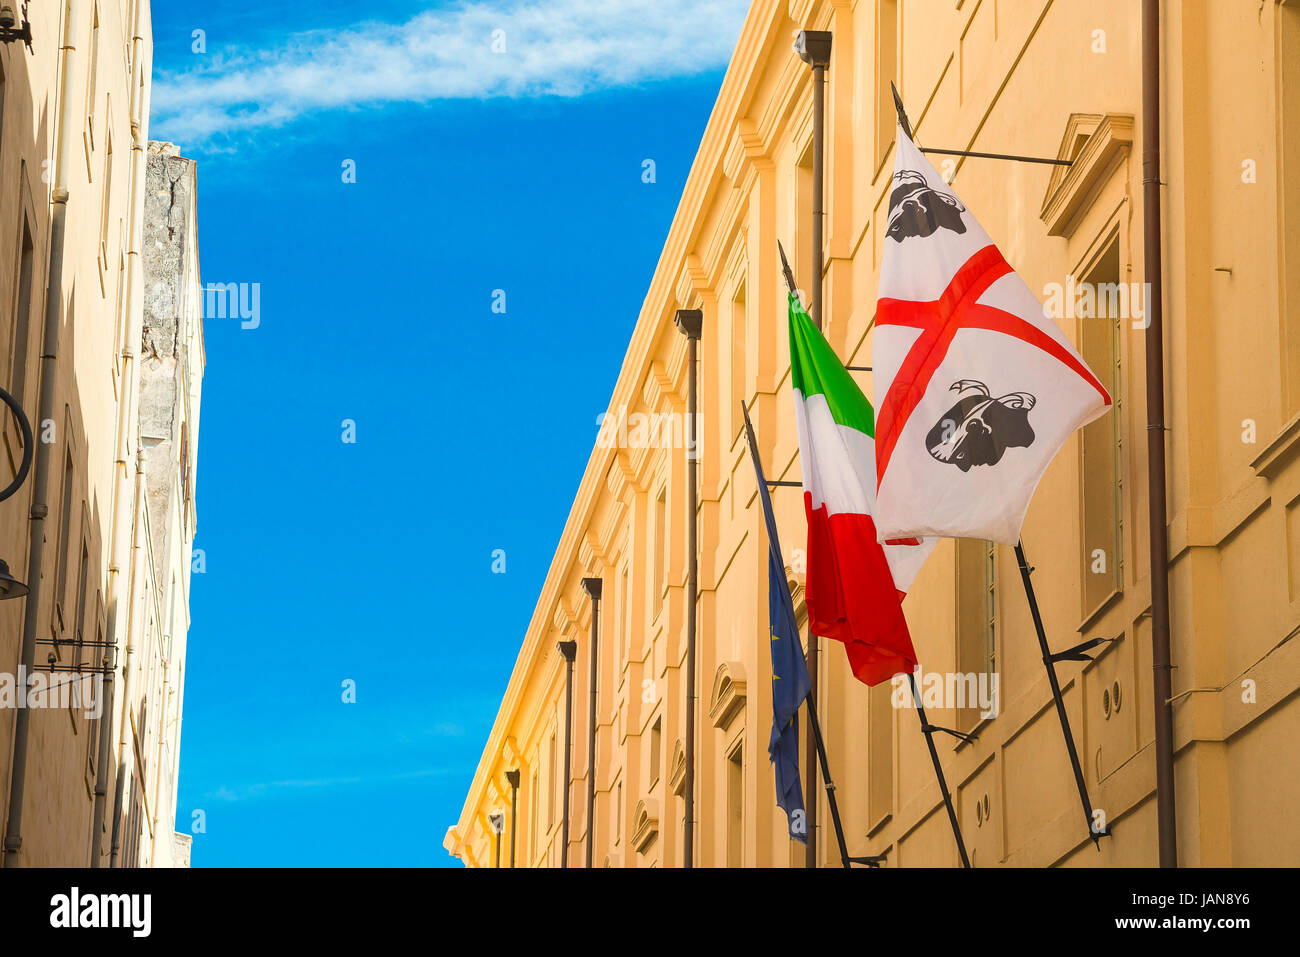 Castello Cagliari, Cerdeña y una bandera nacional italiano situado en la Via Universita en el histórico barrio de Castello de Cagliari, Cerdeña. Foto de stock